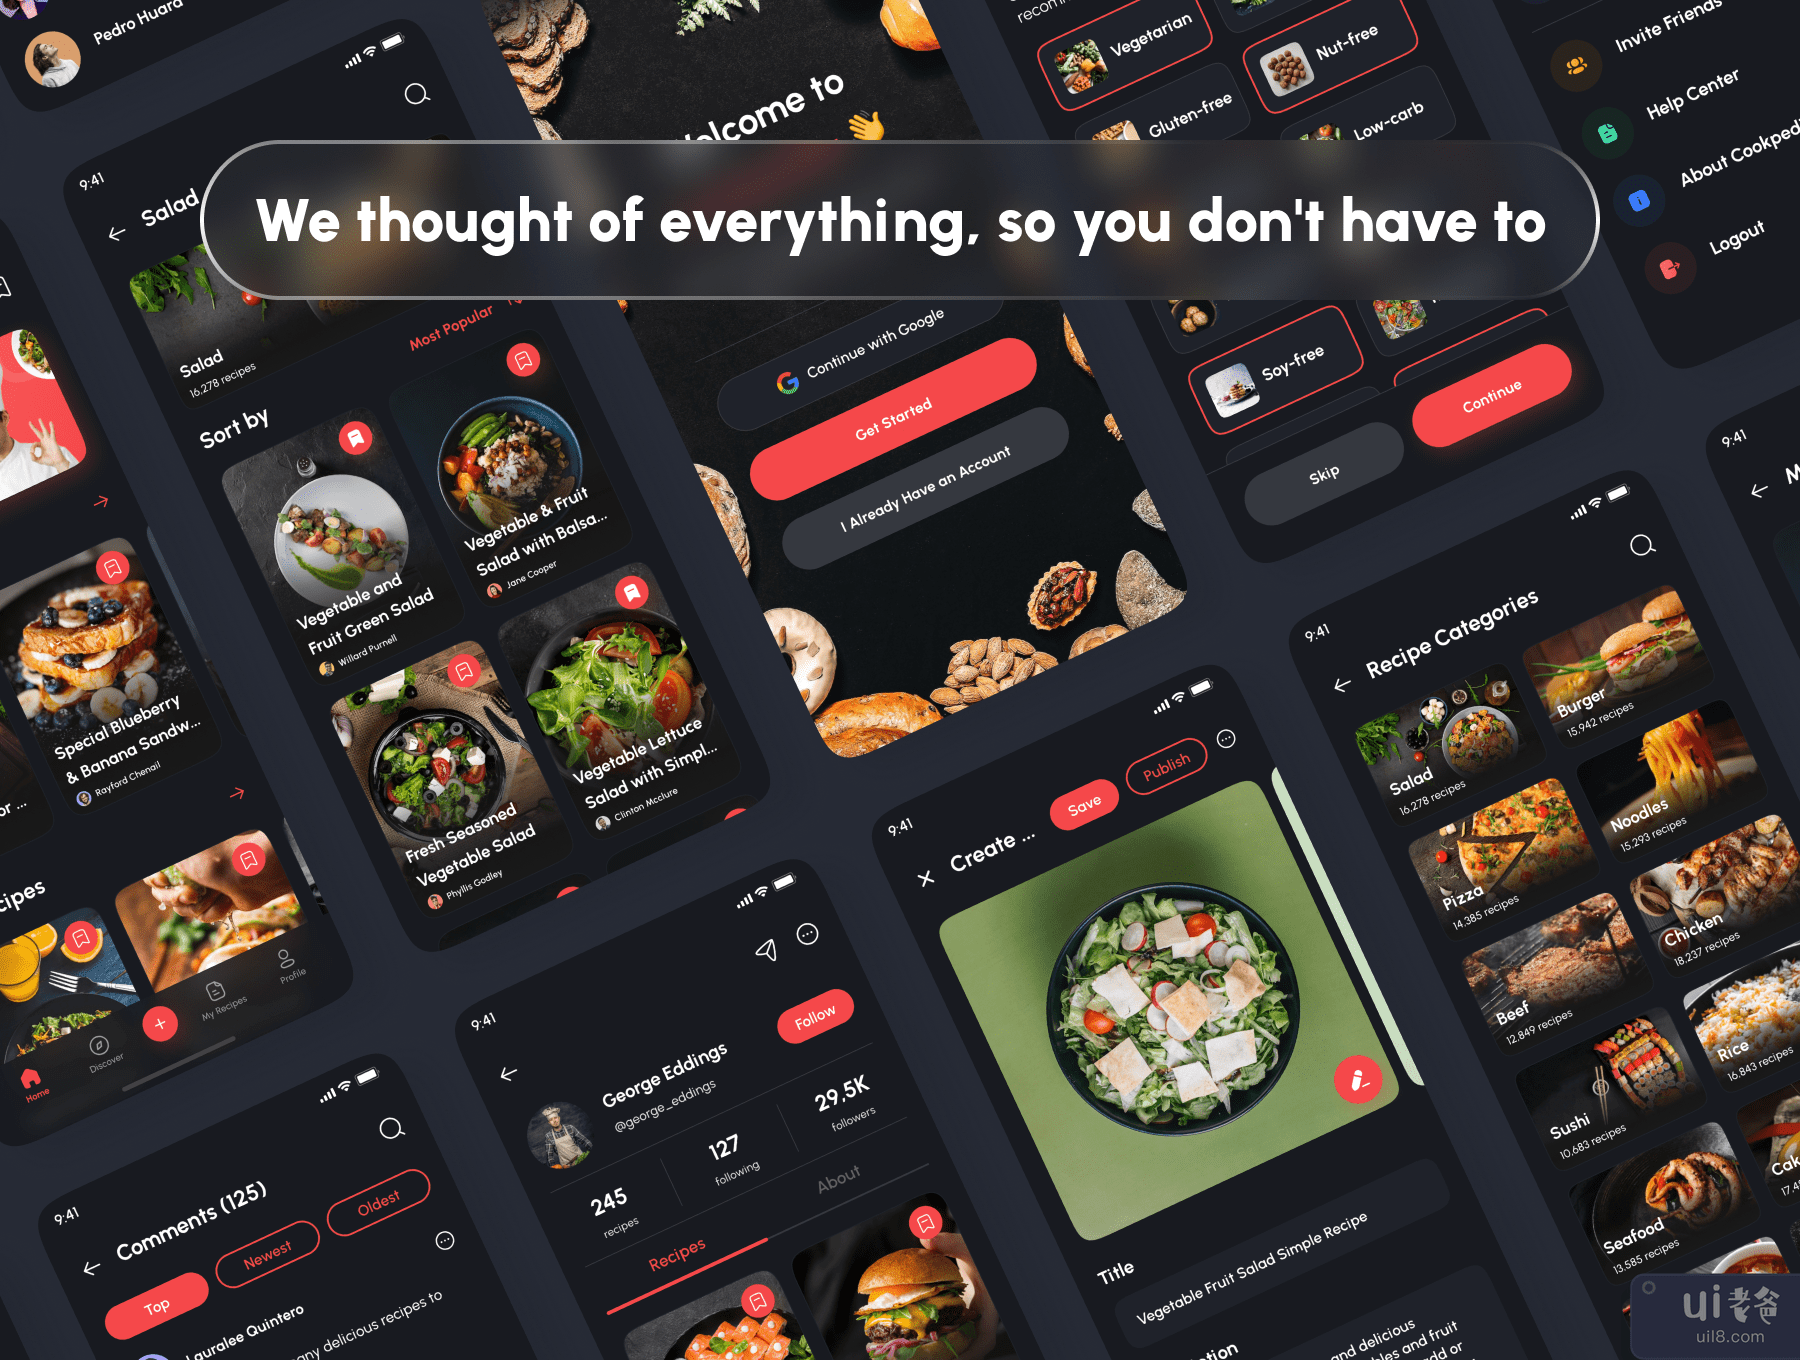 Cookpedia - 食物食谱应用程序 UI 工具包 (Cookpedia - Food Recipe App UI Kit)插图2